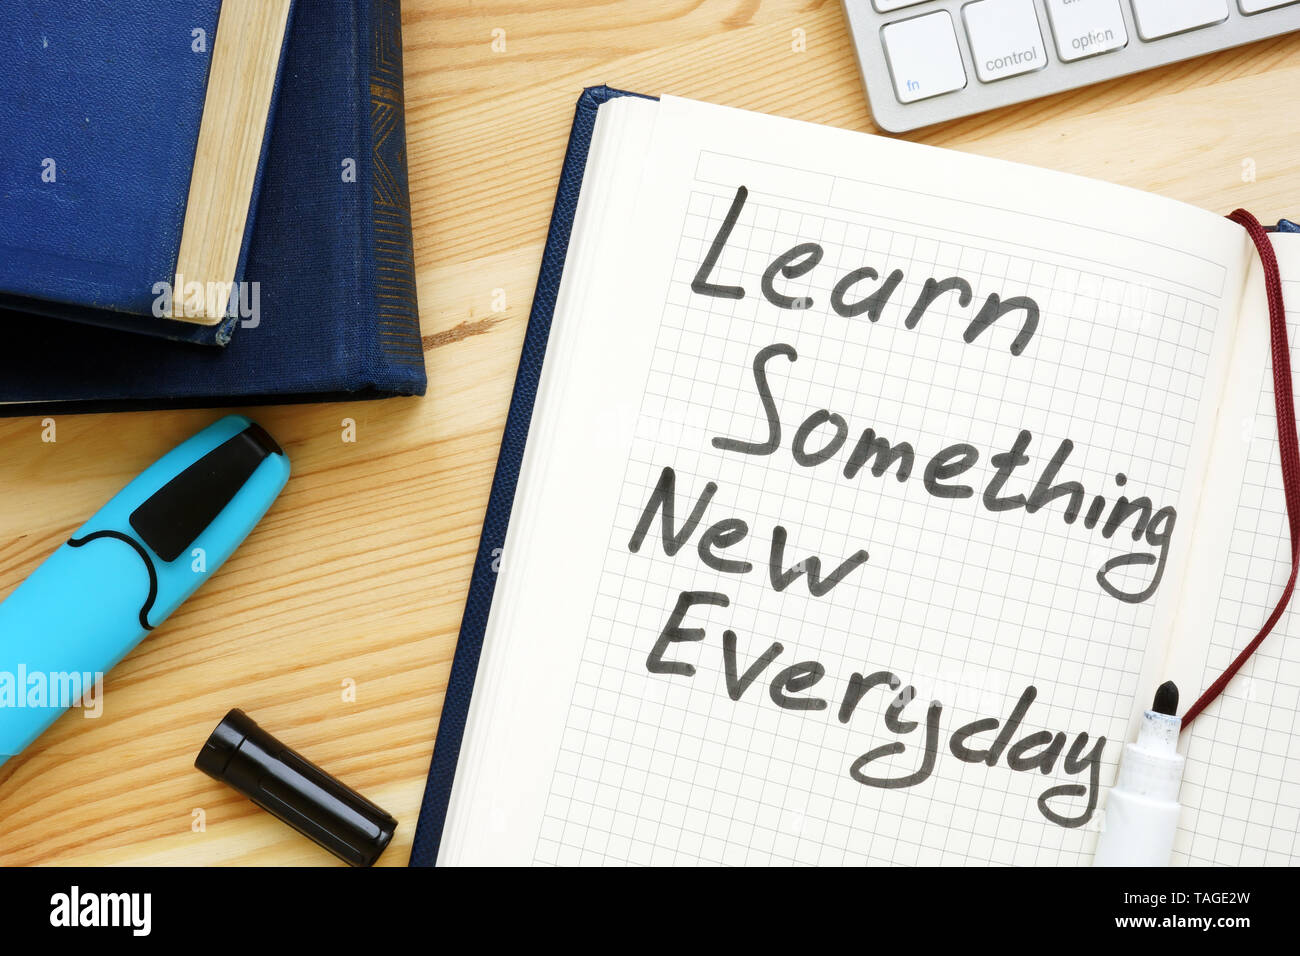 Aprender algo nuevo cada día. Concepto de aprendizaje de por vida. Foto de stock